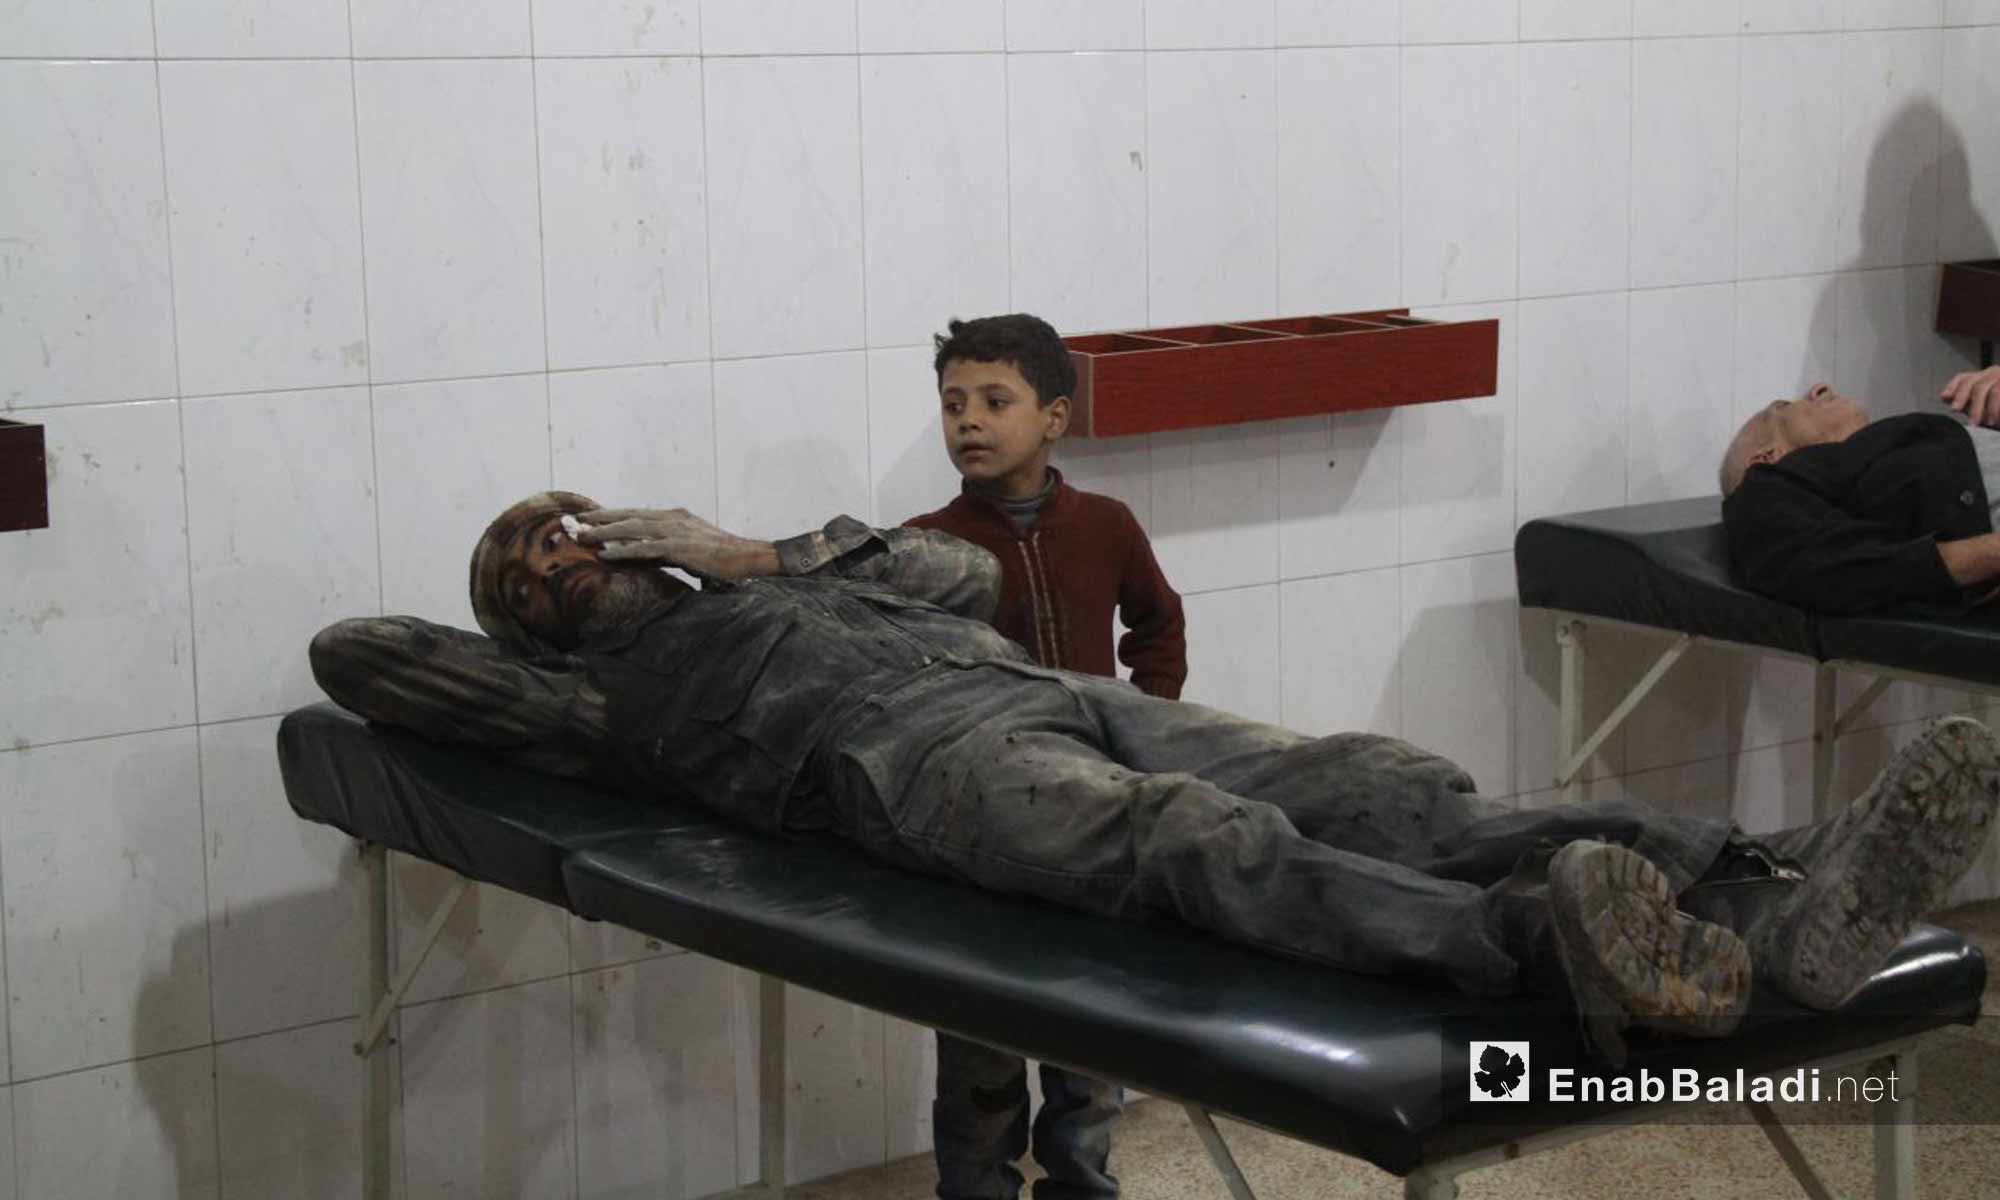 إسعاف جرحى أصيبوا جراء القصف الجوي على مدينة حمورية في الغوطة الشرقية - 18 تشرين الثاني 2017 (عنب بلدي)